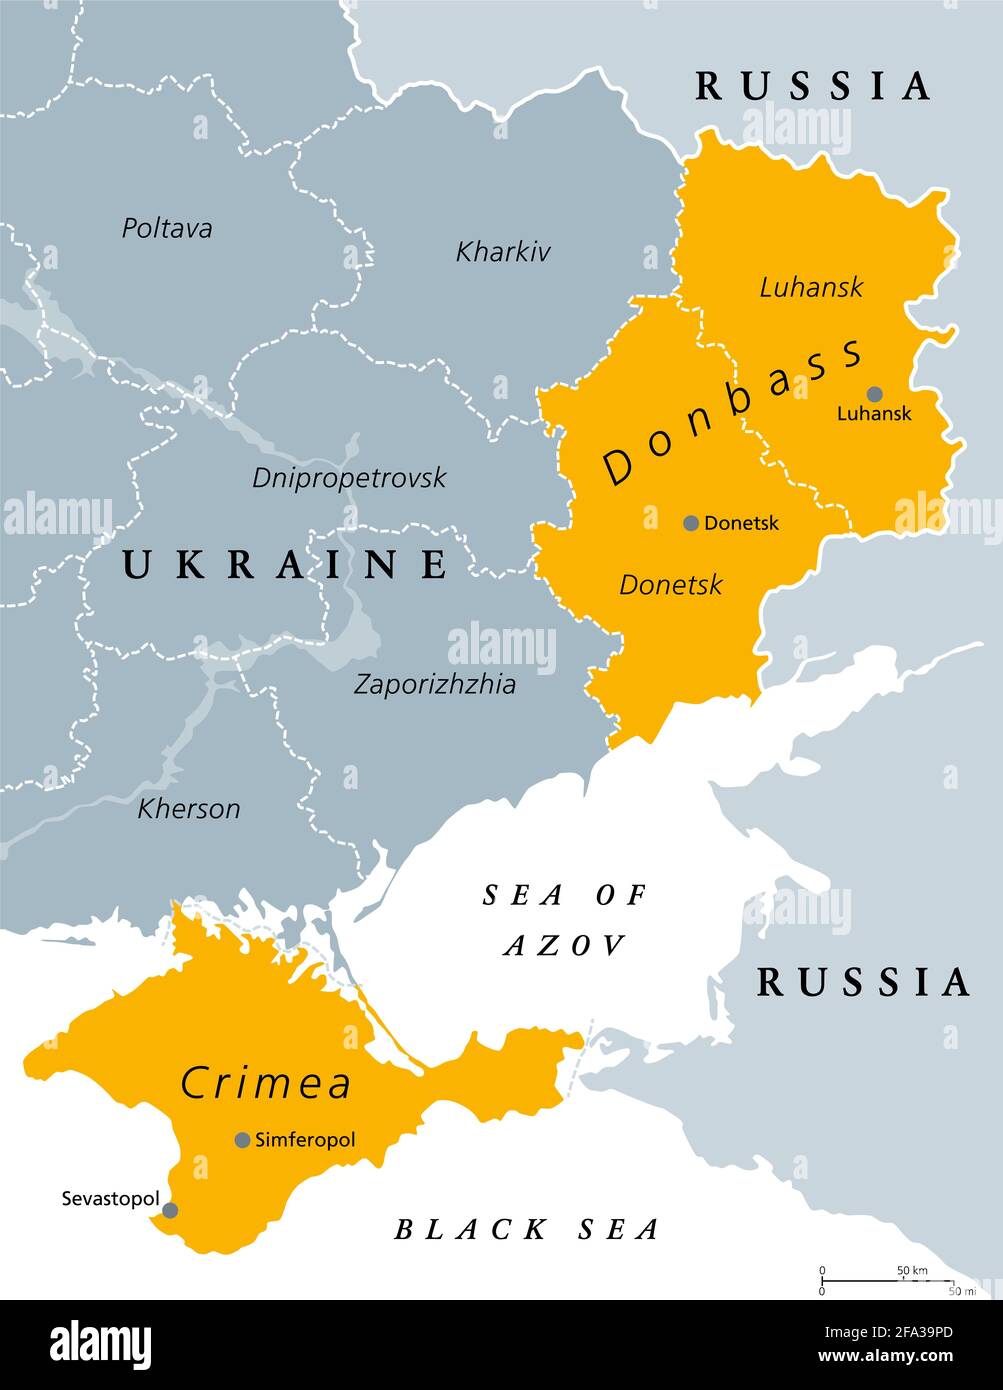 Donbass et Crimée, carte politique. La péninsule de Crimée, sur la côte de la mer Noire, et la région du Donbass, formée par la région de Donetsk et de Luhansk. Zone contestée. Banque D'Images